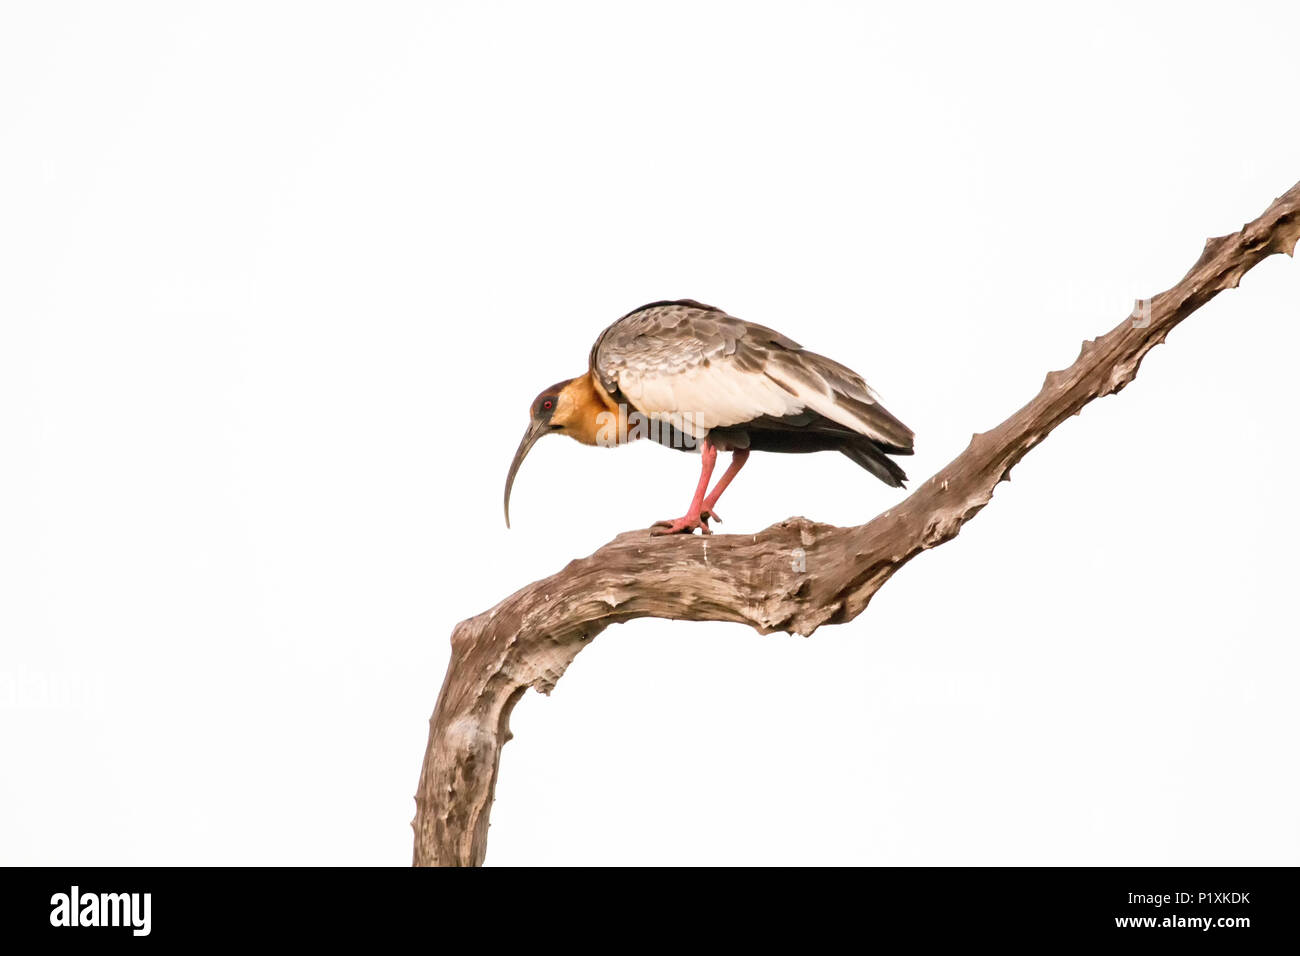 Regione Pantanal, Mato Grosso, Brasile, Sud America. Buff-Ibis a collo alto in un albero morto. Foto Stock